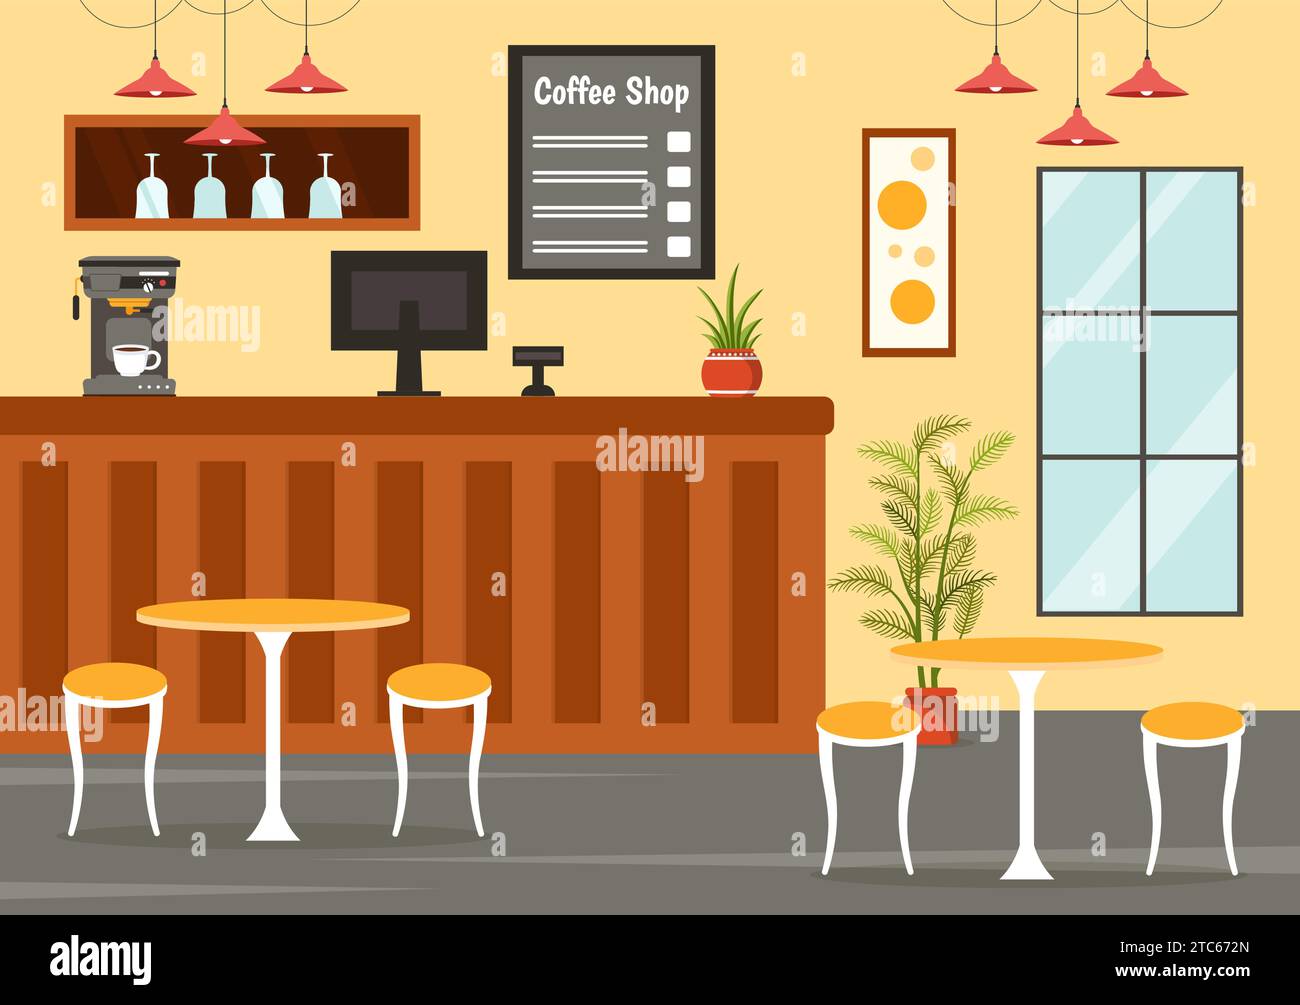 Coffee Shop Vektor-Illustration mit Innenraum und Möbeln passend für Poster oder Werbung im flachen Cartoon Hintergrund Design Stock Vektor